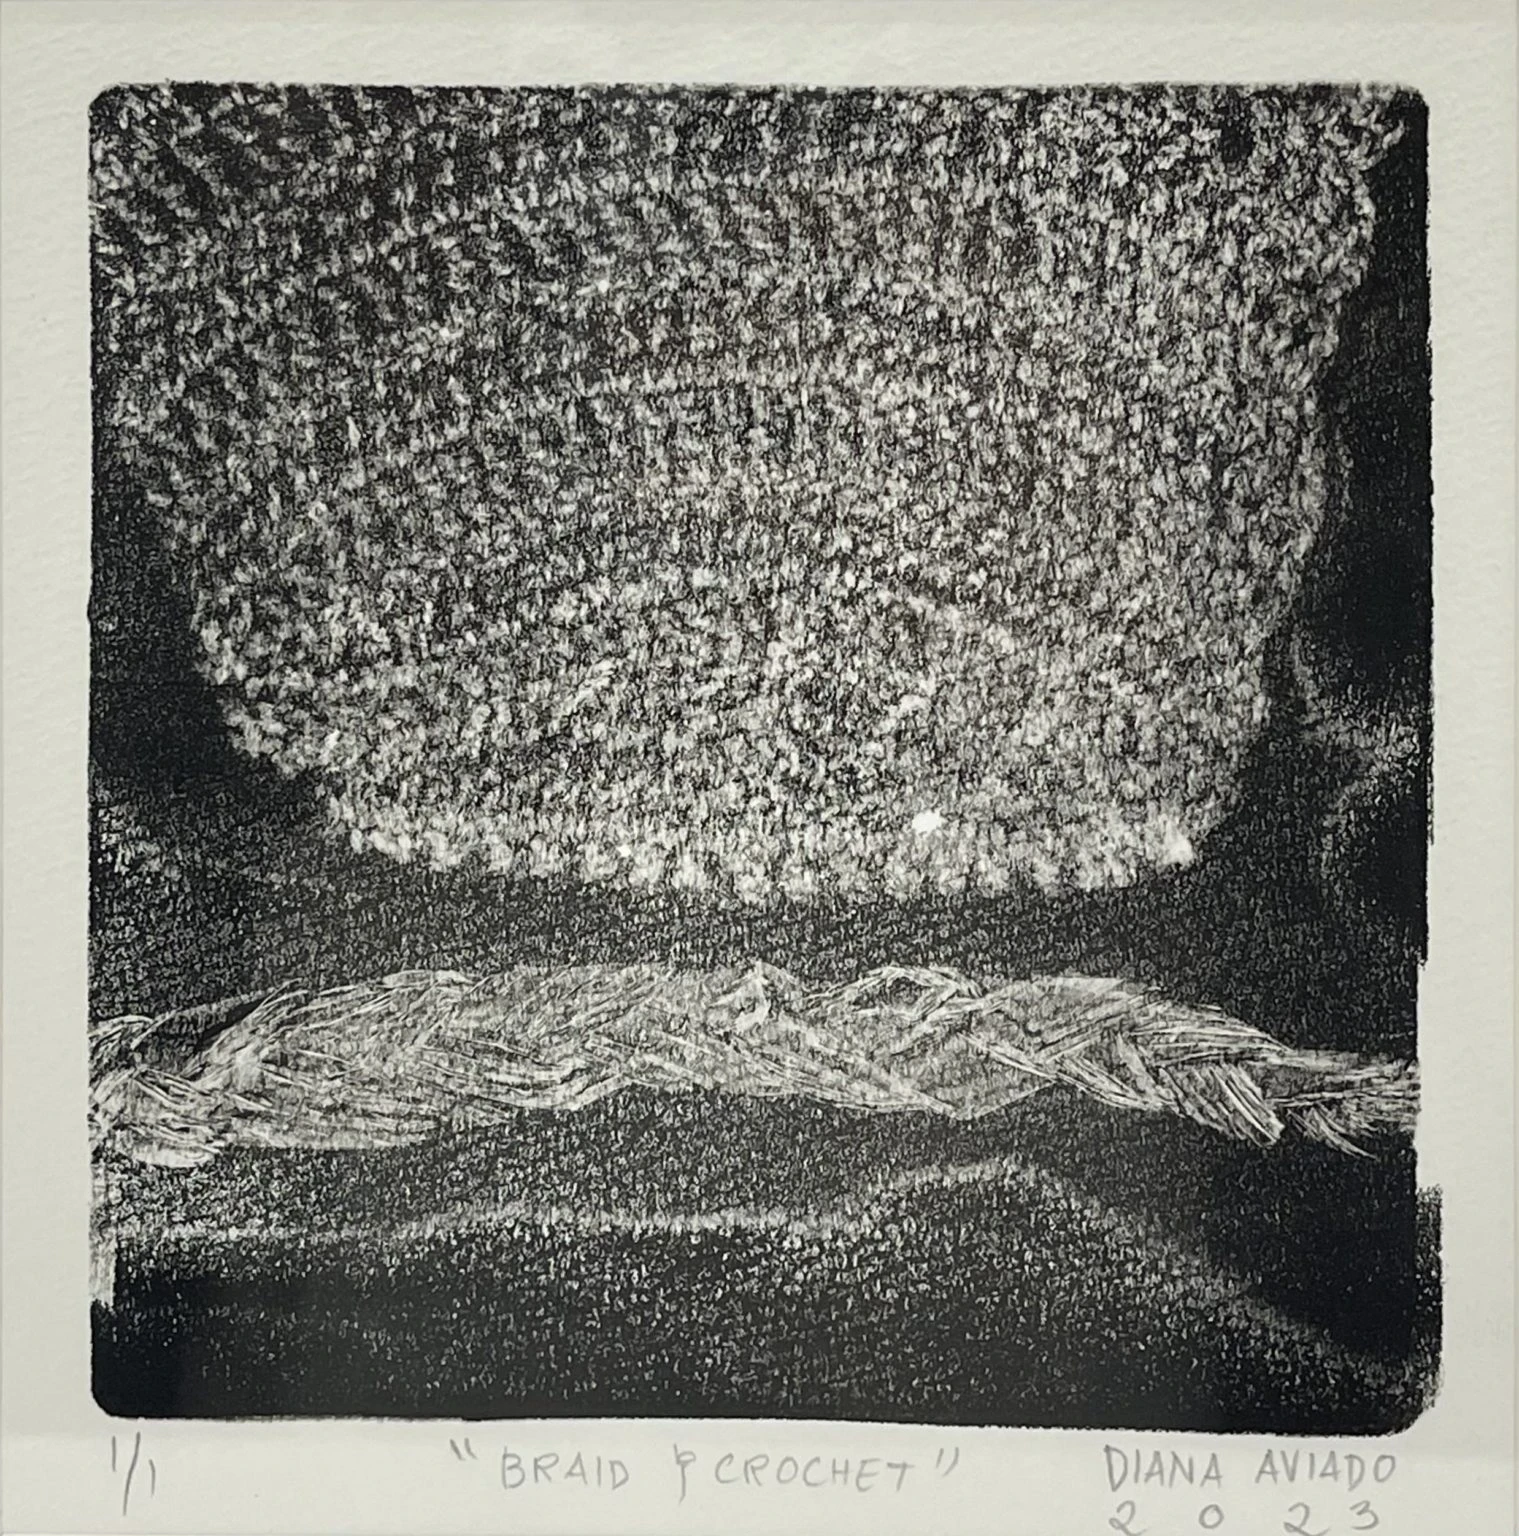 Braid and Crochet by Diana Aviado